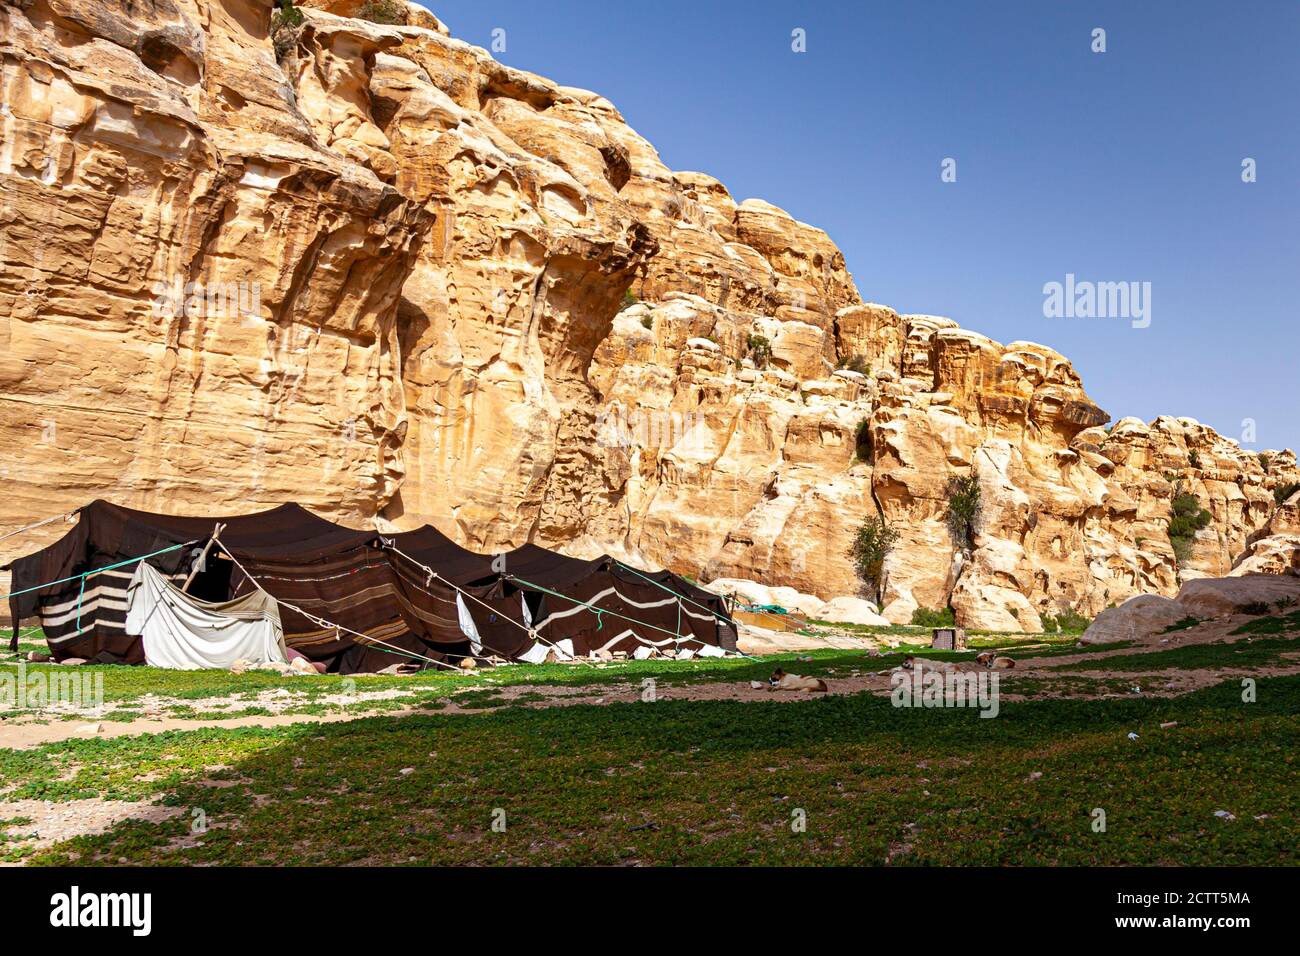 Une tente bédouine en poils de chèvre installée dans le paysage désertique de Jordanie, près de Petra. L'image présente les formations rocheuses et les chiens de berger par ce no Banque D'Images